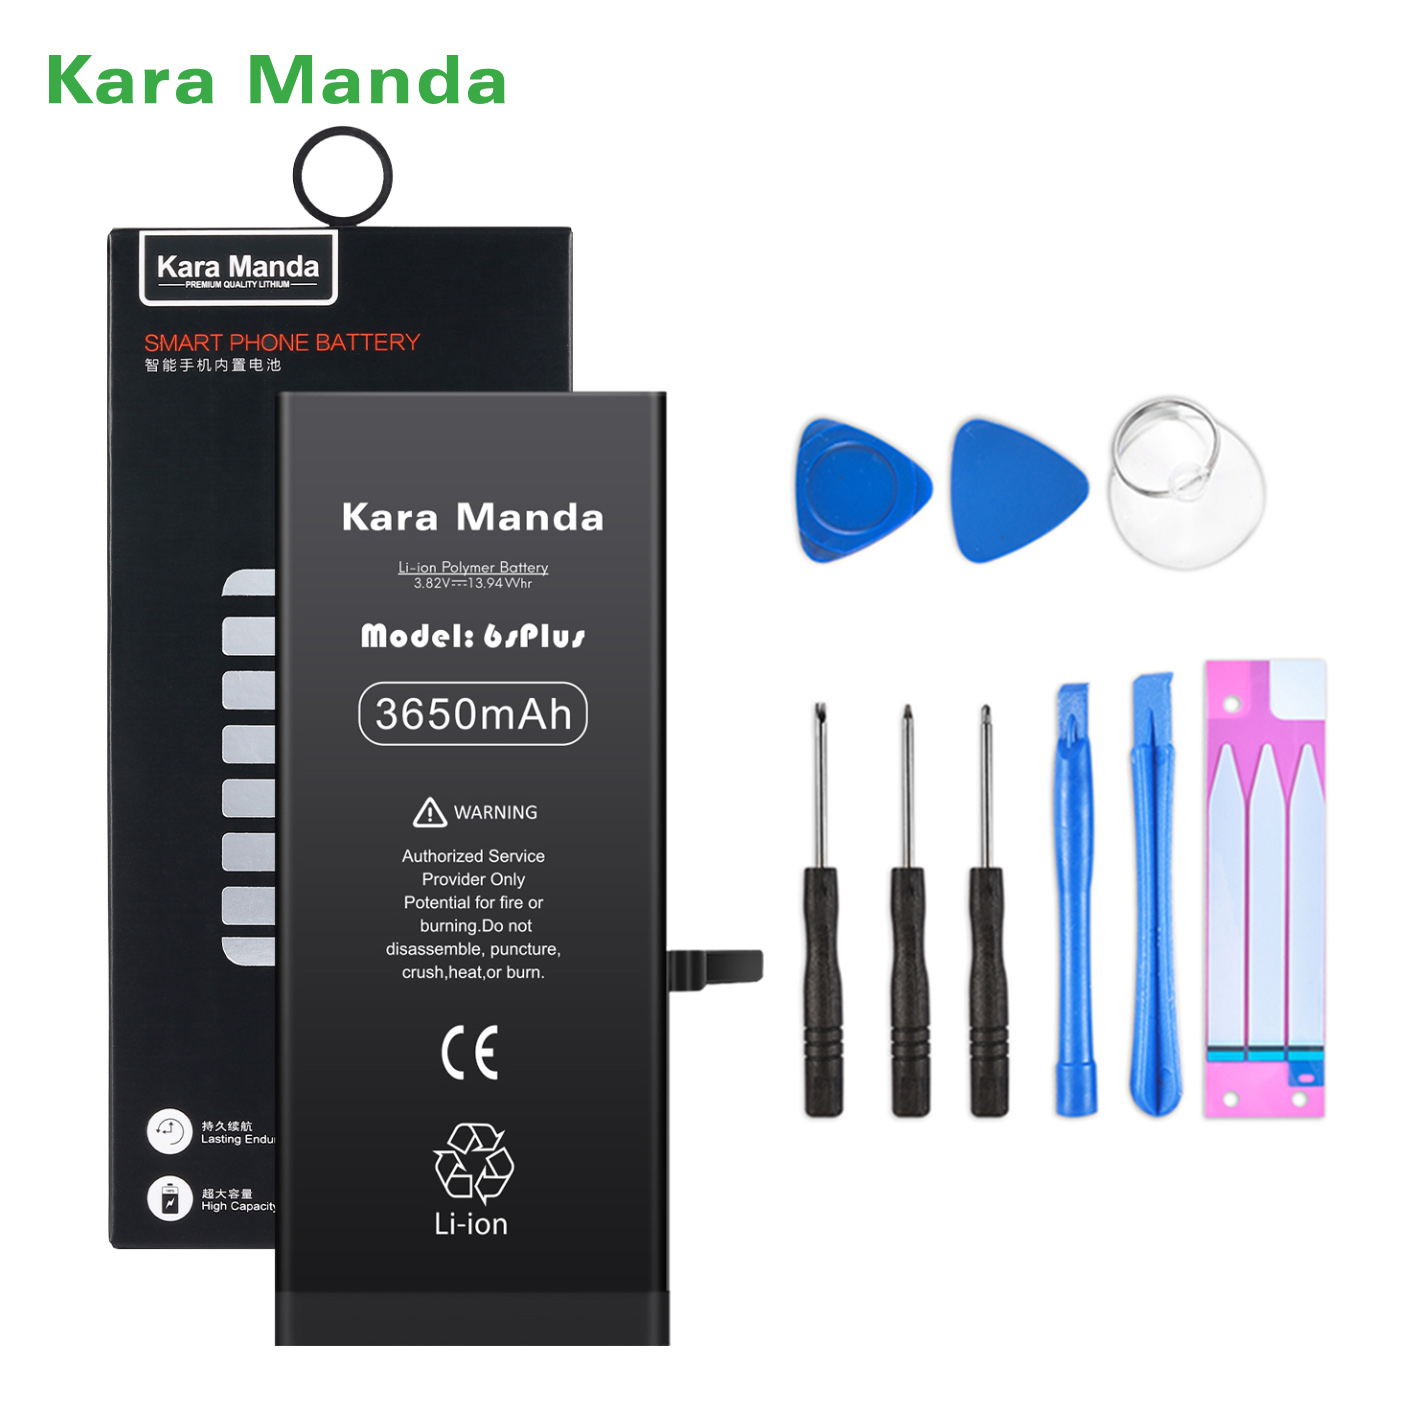 https://www.cnkaramanda.com/iphone-6splus-replacement-battery-6s-plus-battery-high-capacity-3650mah-wholesale-oemkara-manda-product/